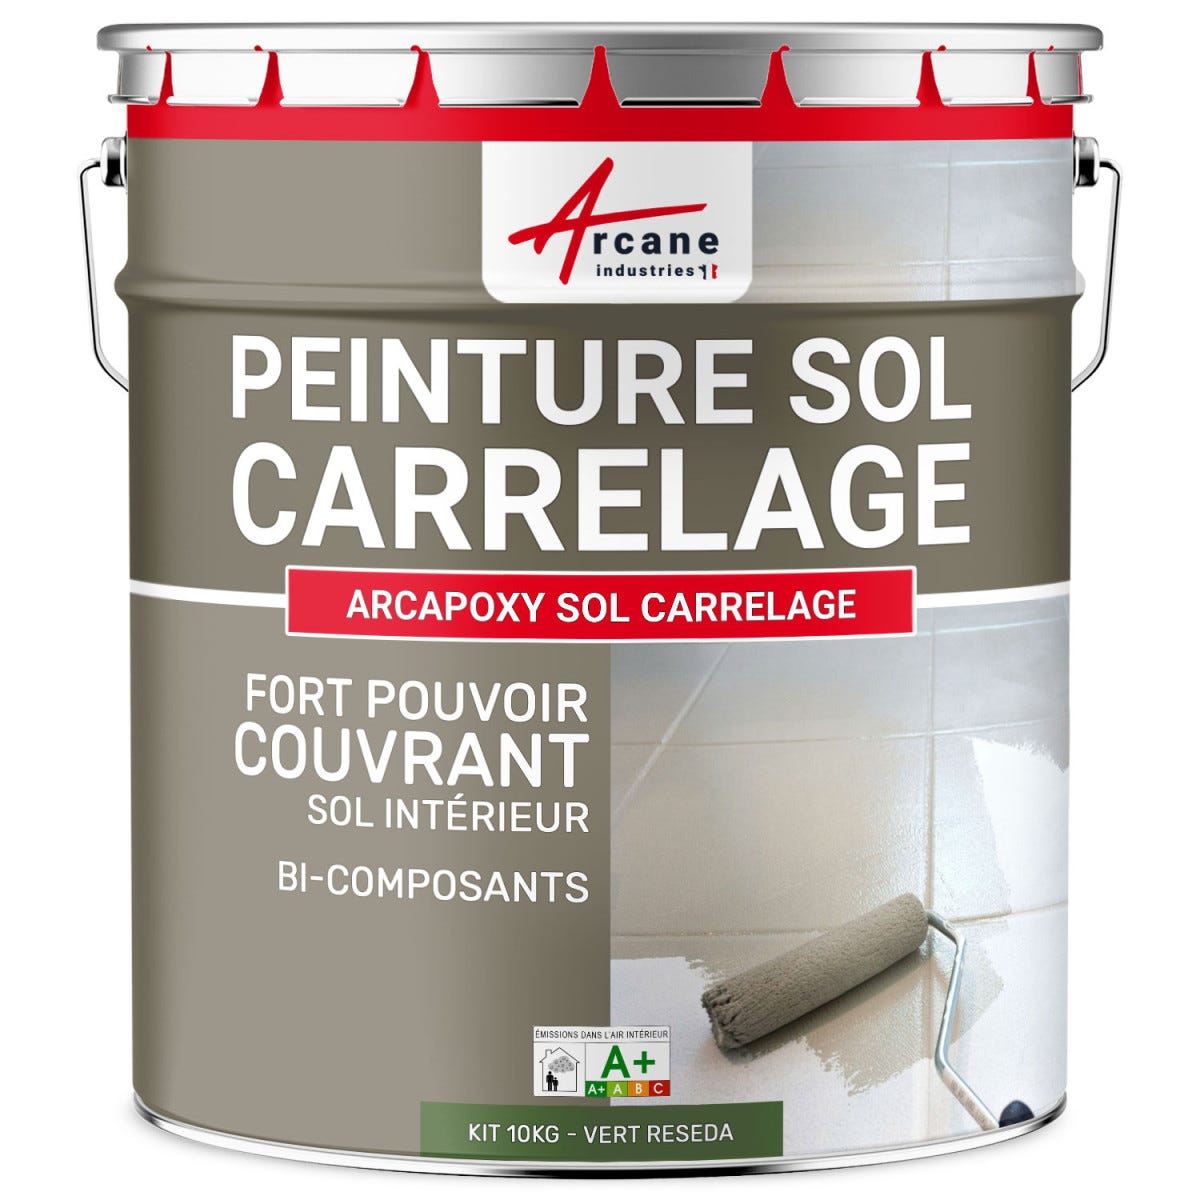 Peinture Résine Sol Carrelage - ARCAPOXY SOL CARRELAGE - 10 kg (jusqu'à 50 m² en 2 couches) - Vert Reseda - RAL 6011 - ARCANE INDUSTRIES 0